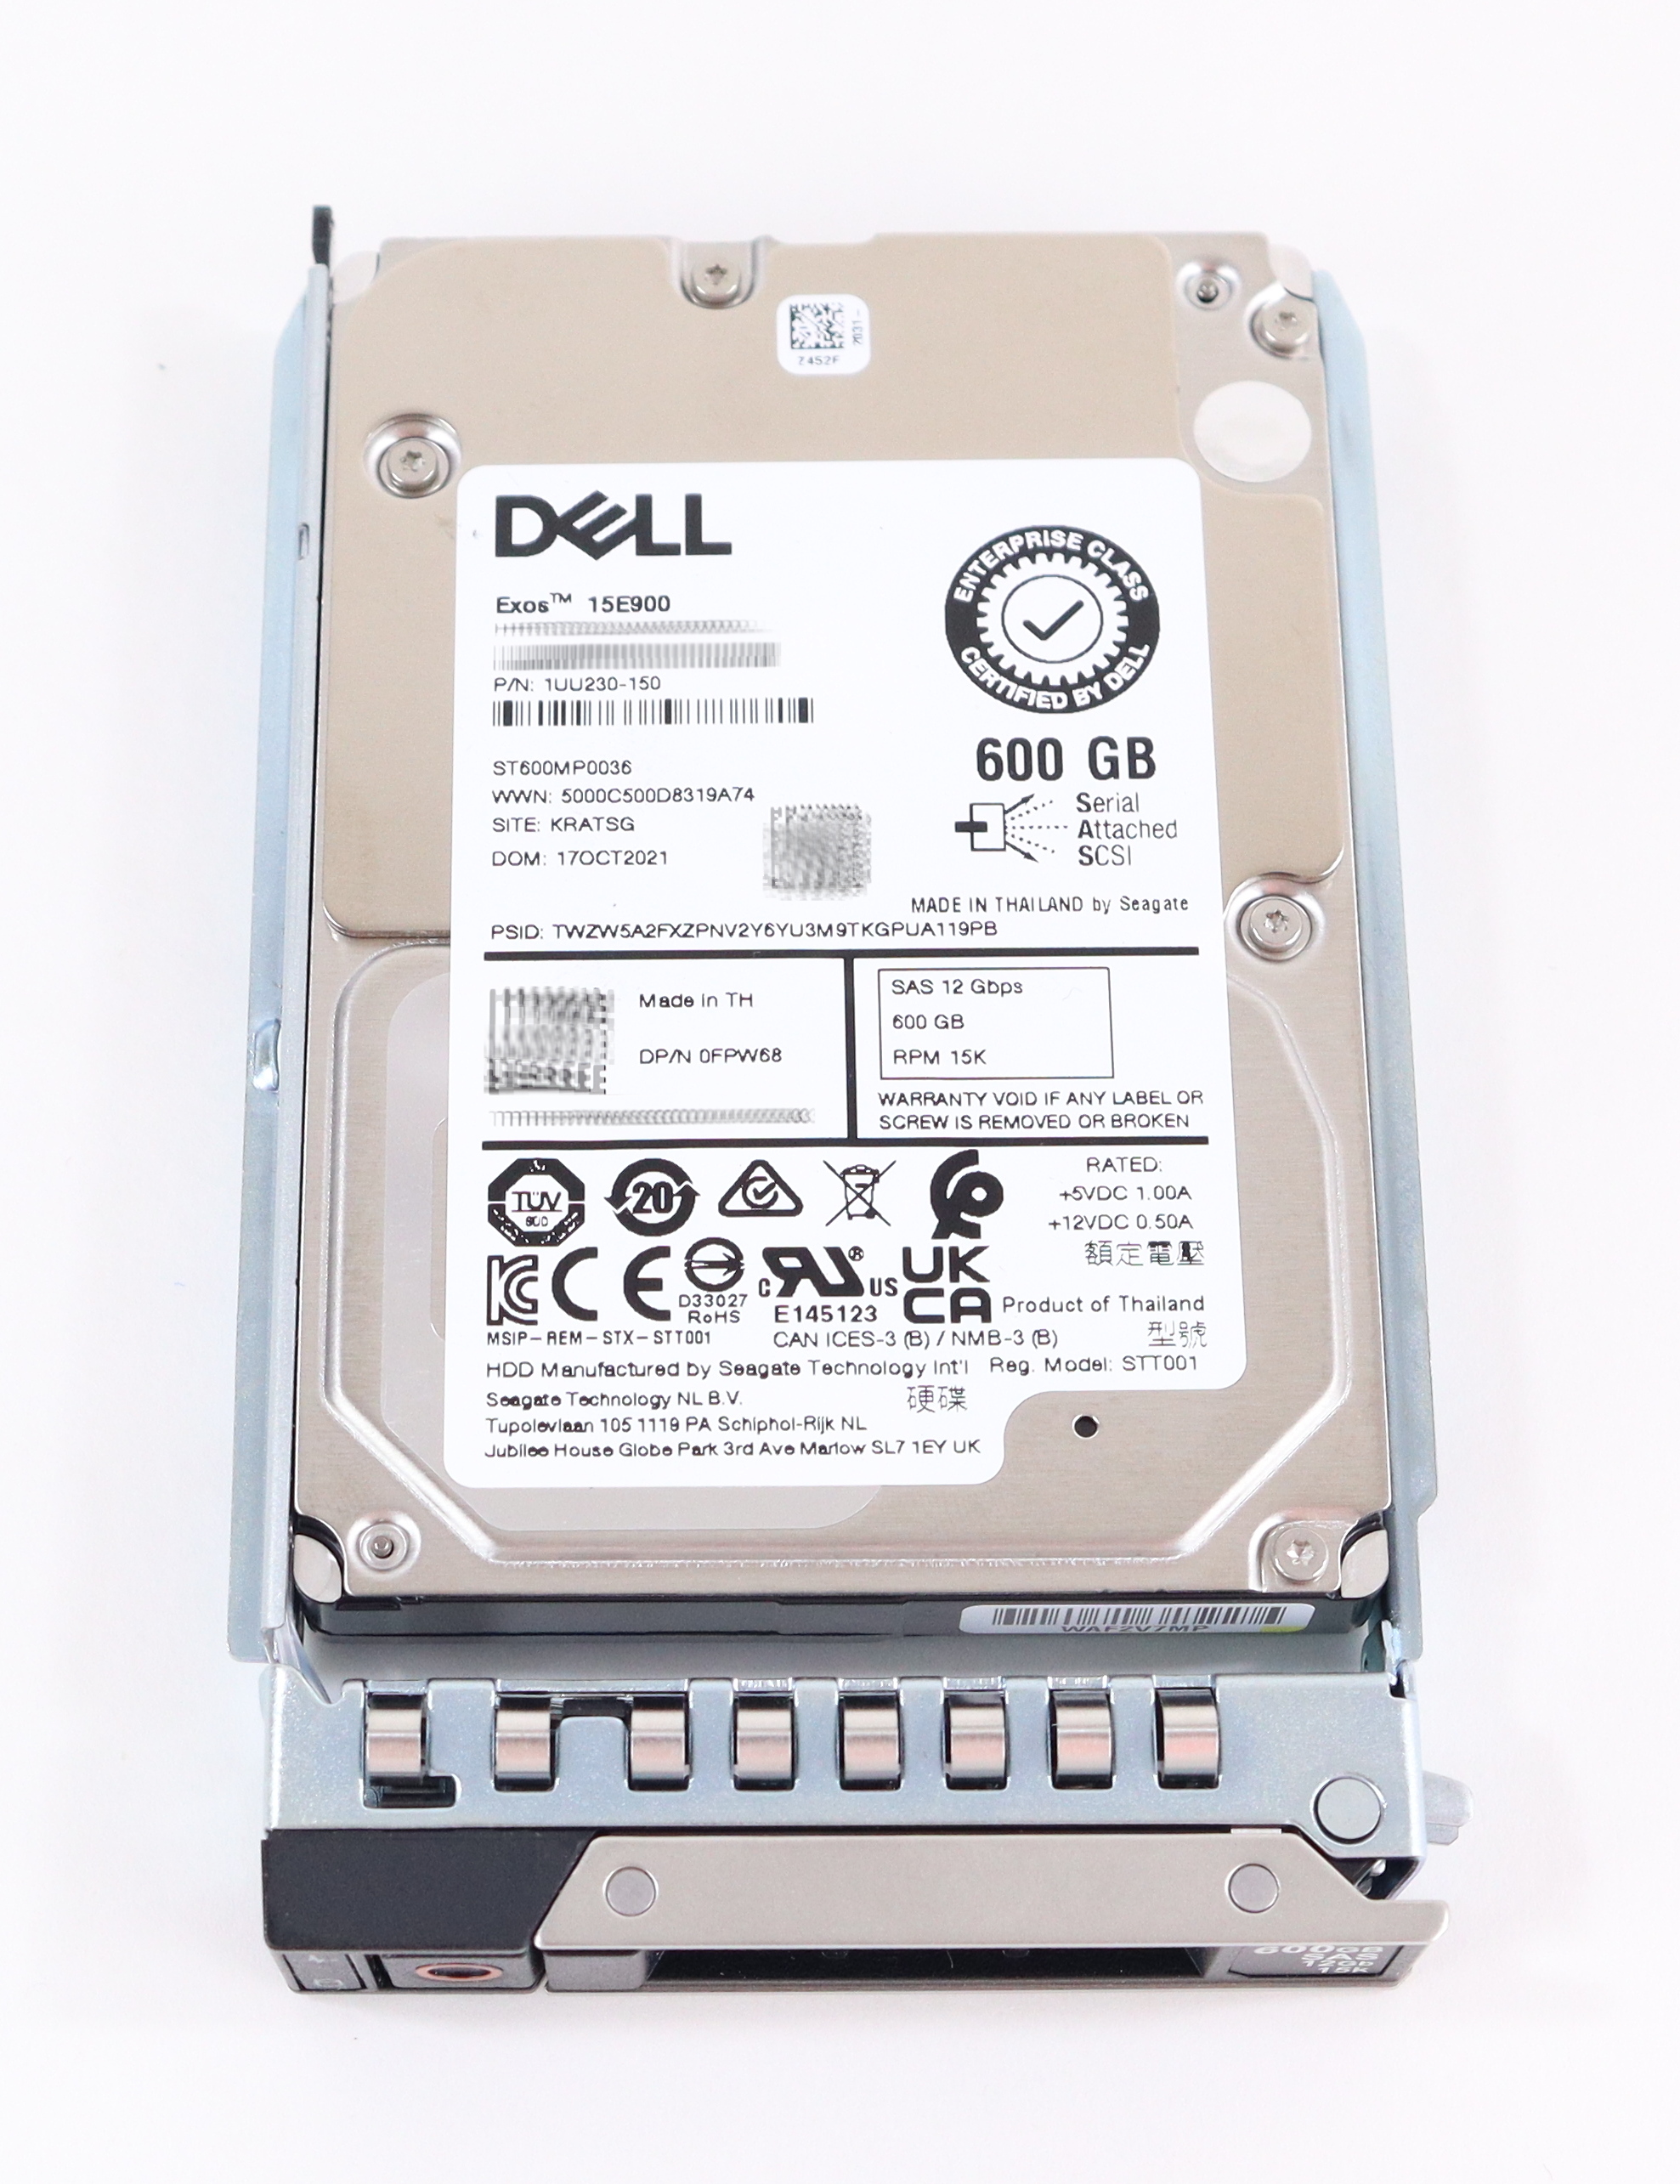 Dell Seagate 600GB Exos 15E900 ST600MP0036 15K RPM SAS 12Gb/s 1UU230-150 FPW68